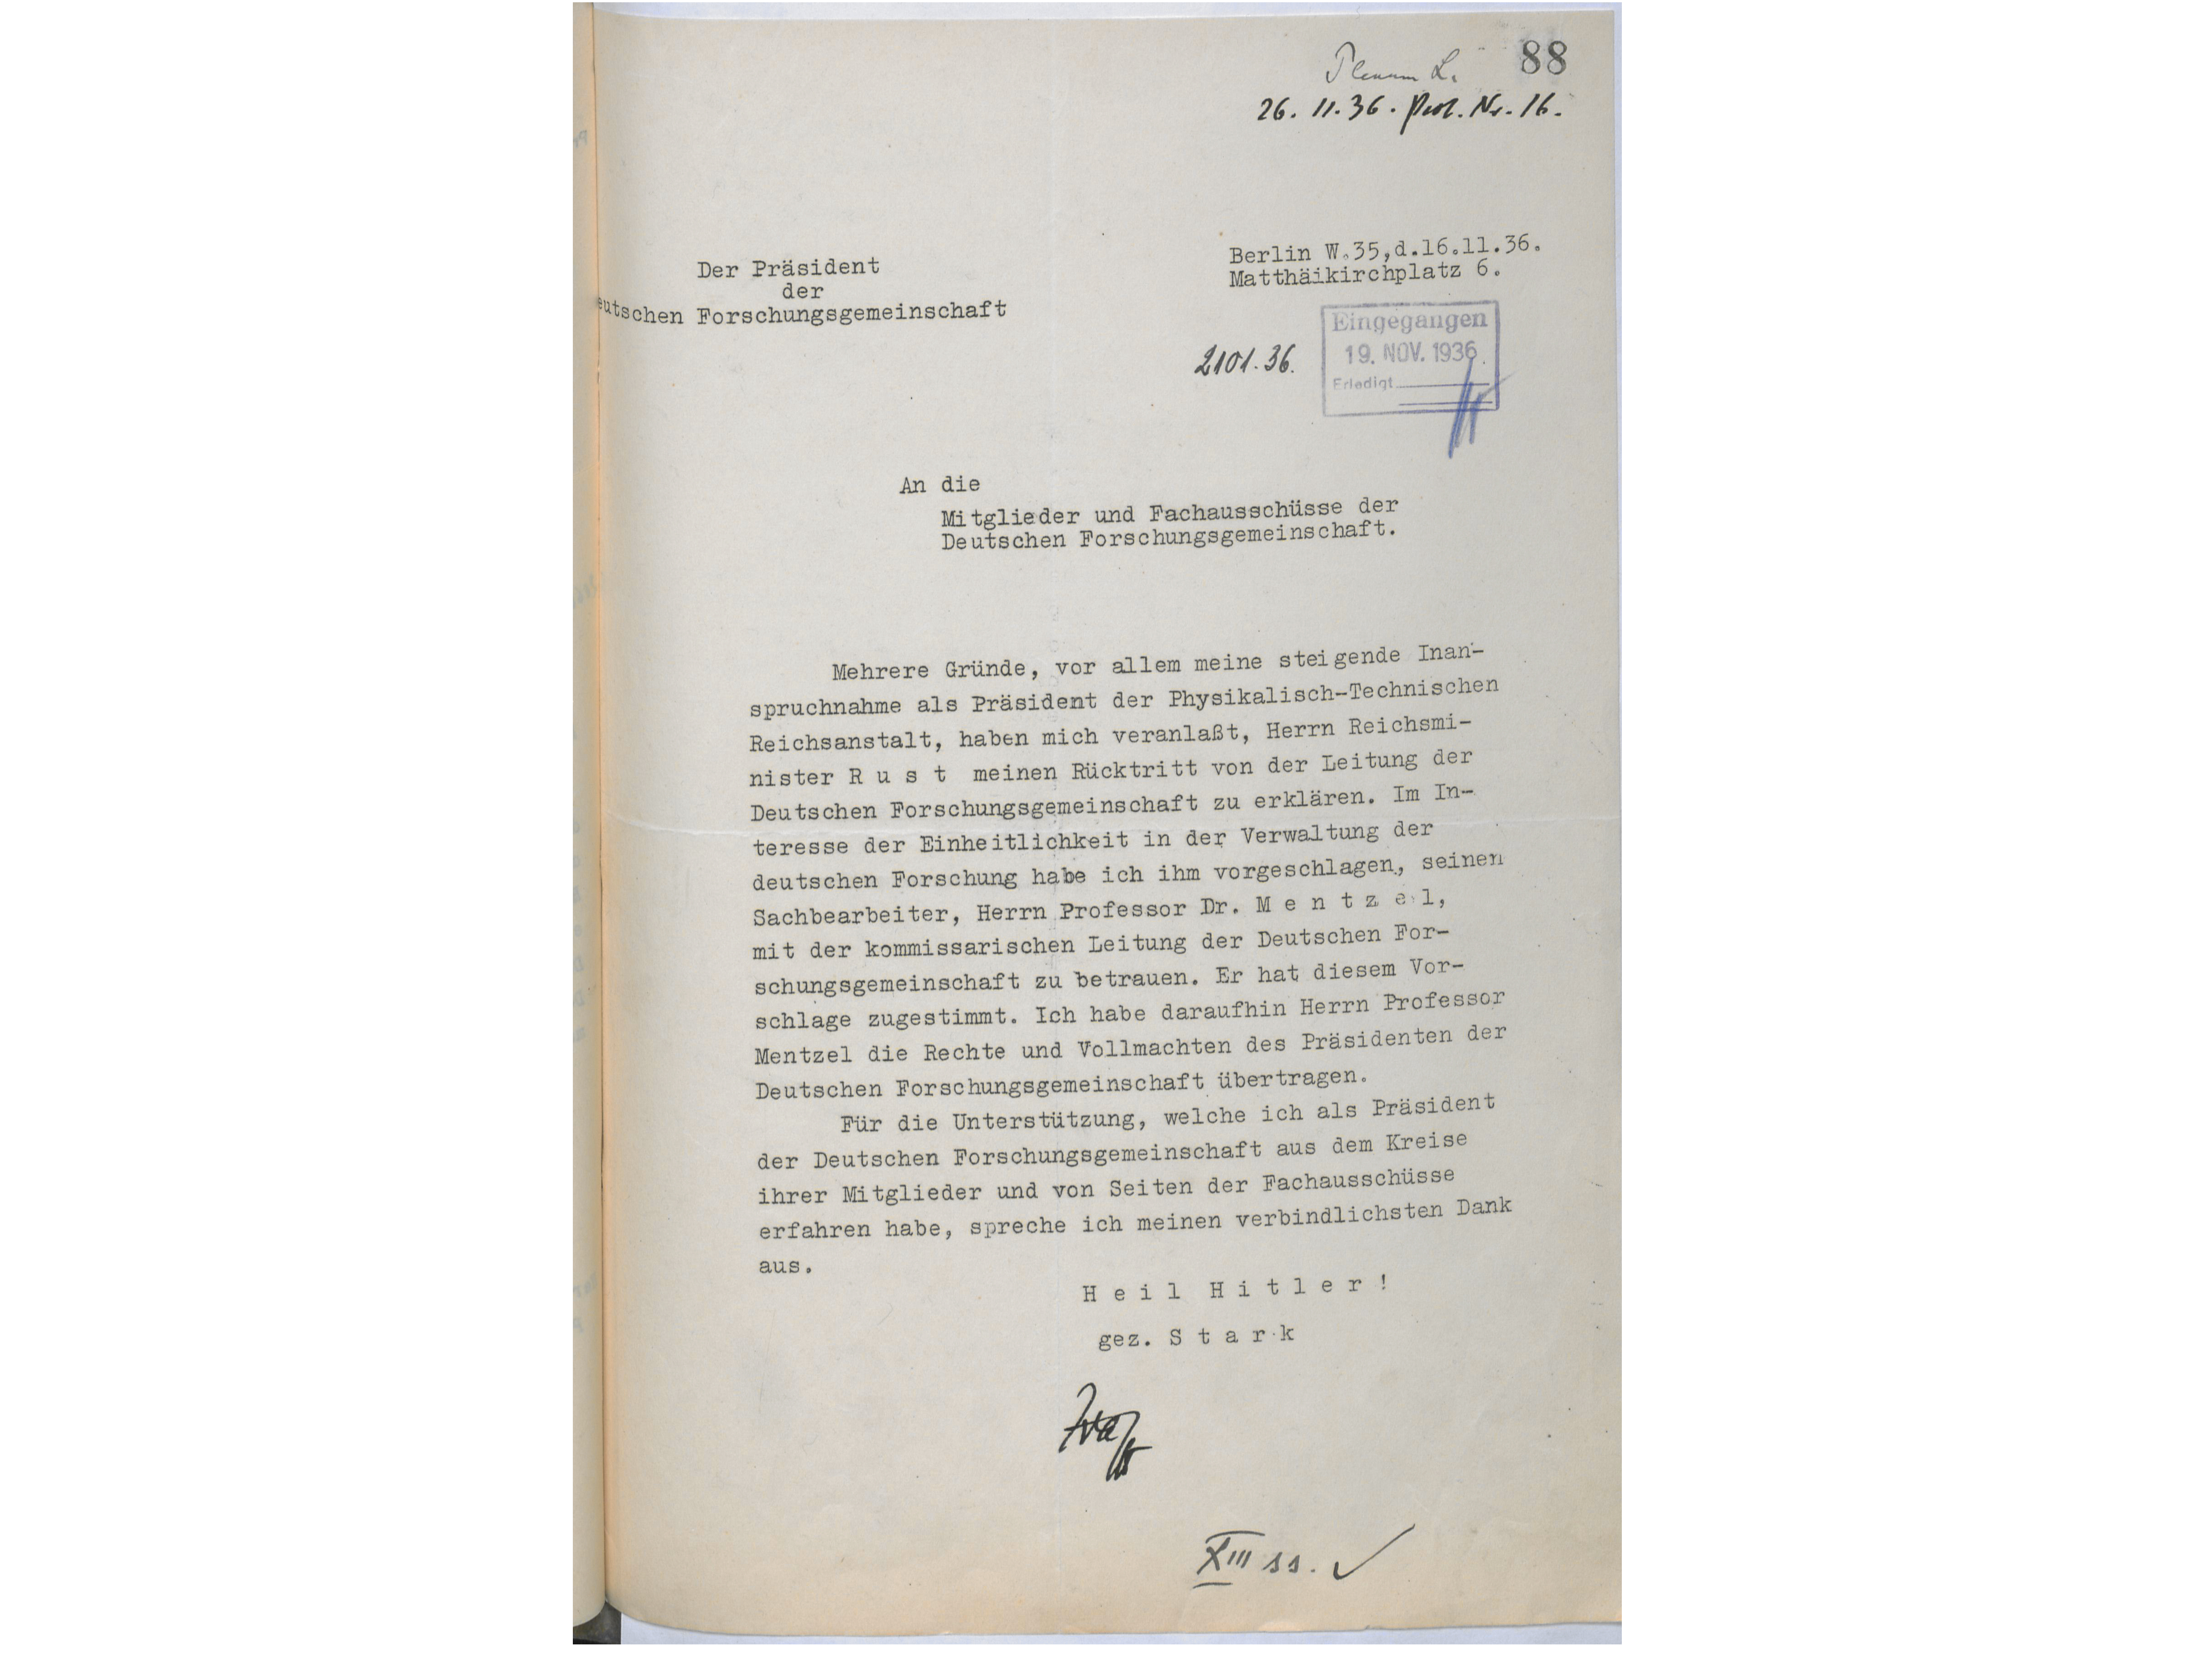 Das Rücktrittsschreiben Starks vom 26. November 1936